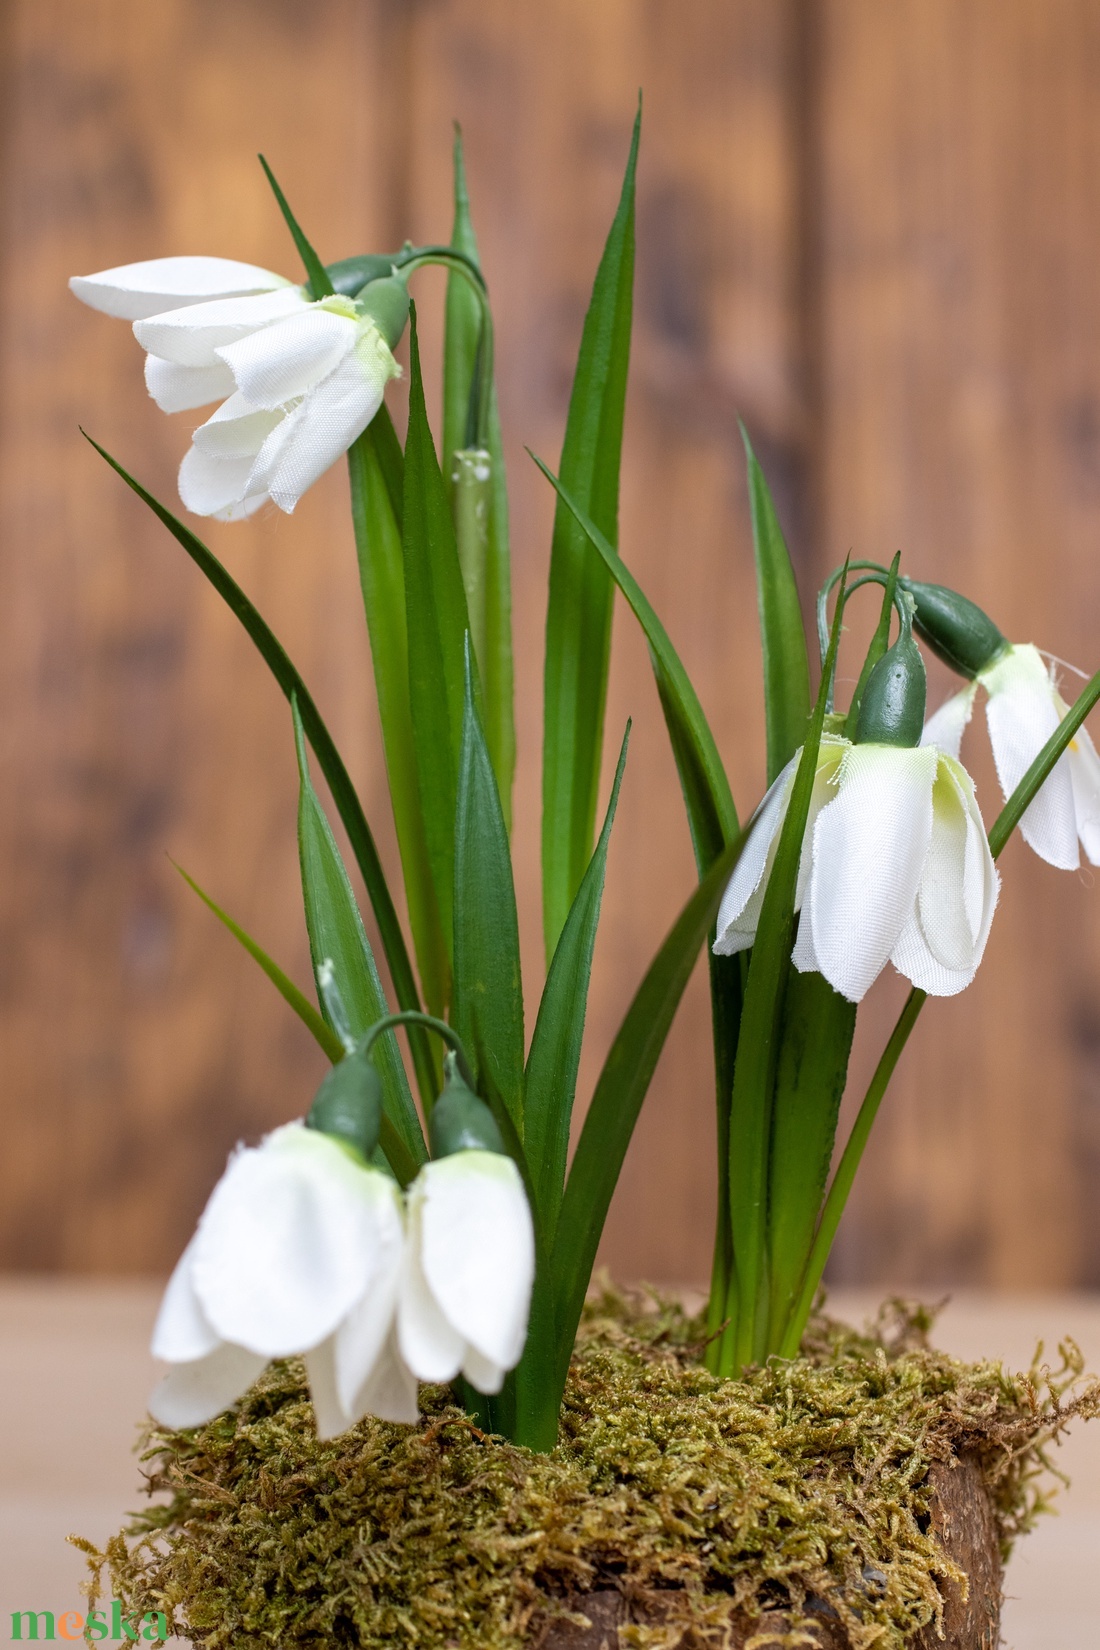 Tavaszi Hóvirág asztaldísz - kókuszdióban - otthon & lakás - dekoráció - asztal és polc dekoráció - asztaldísz - Meska.hu